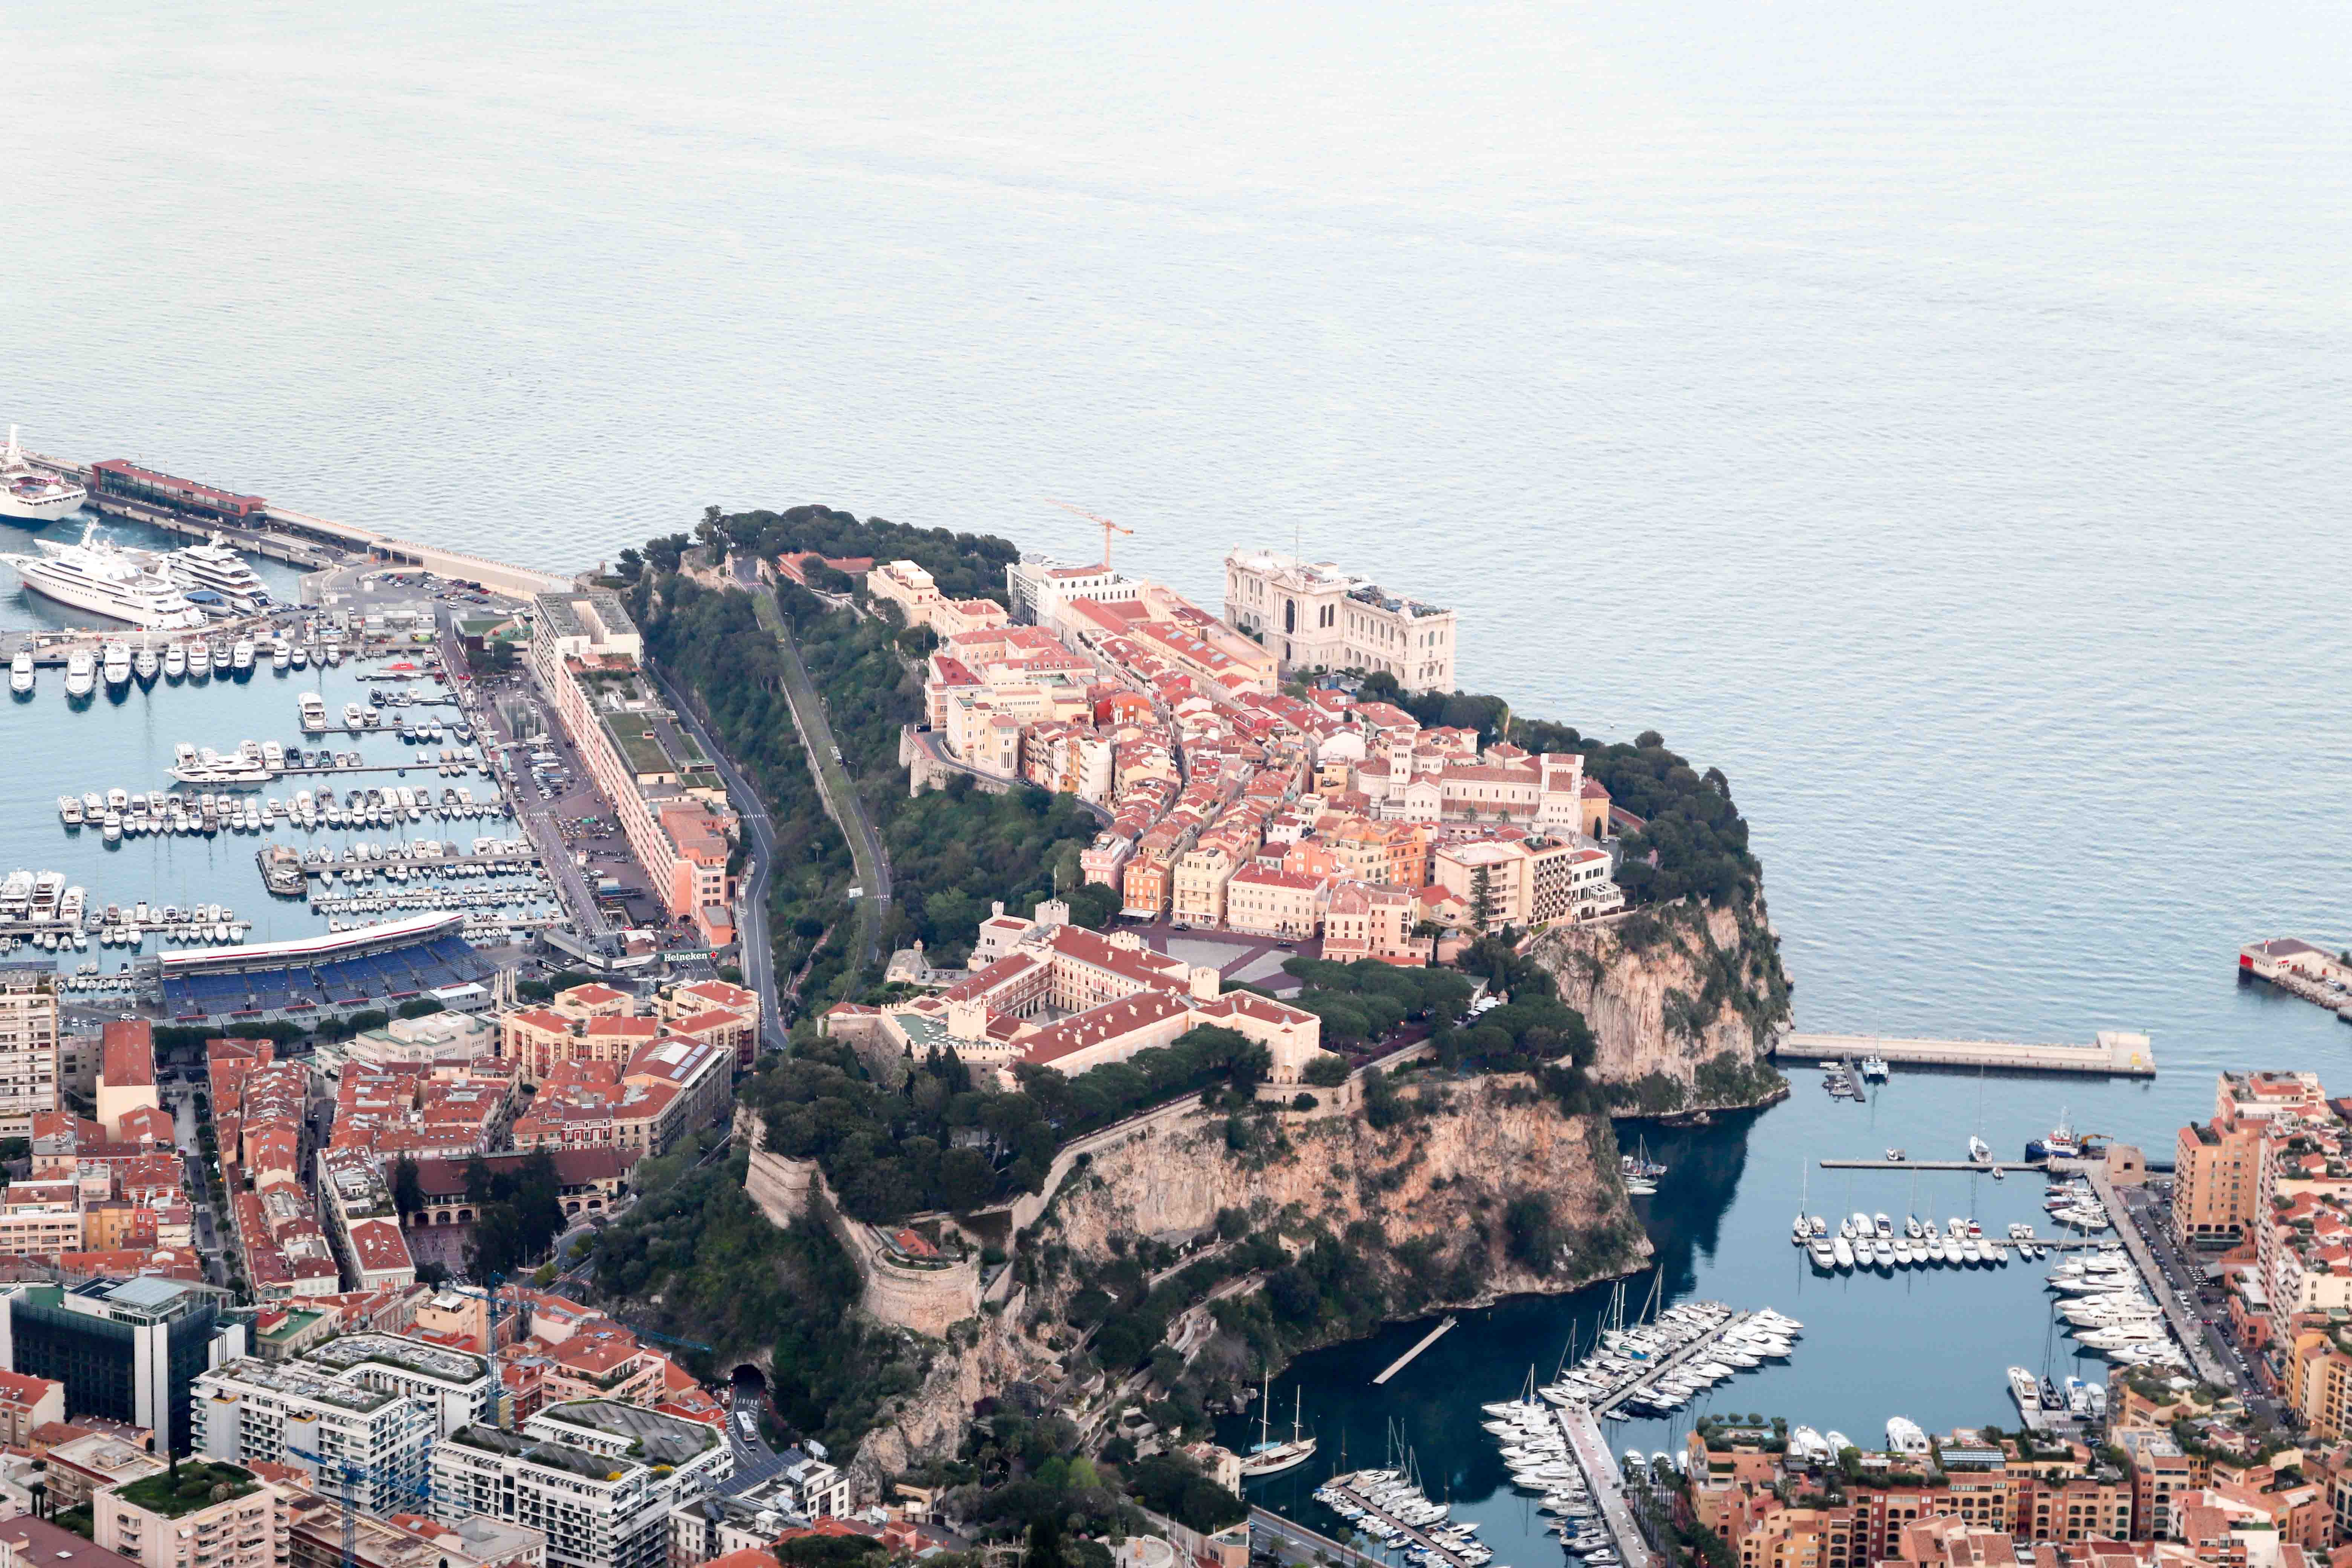 The rocks of Monaco